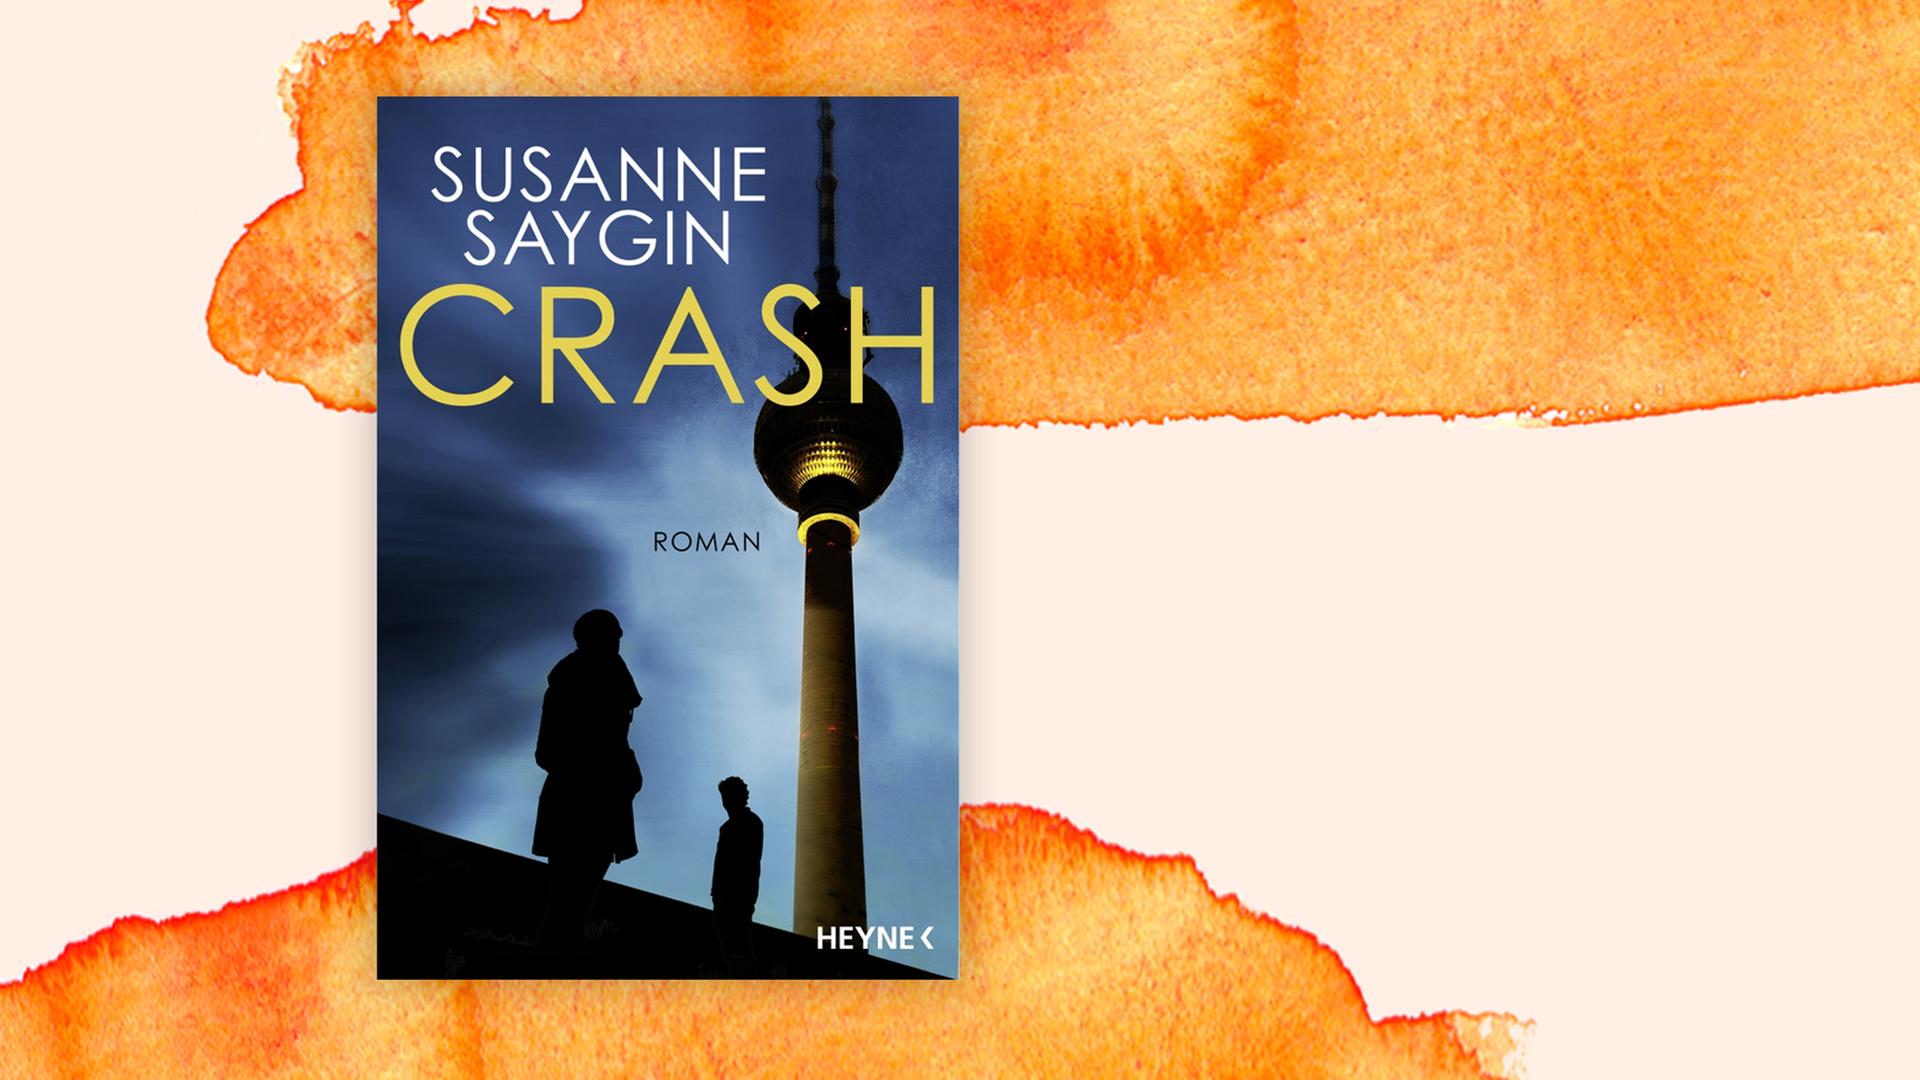 Das Cover des Buches von Susanne Saygin, "Crash", auf orange-weißem Hintergrund.